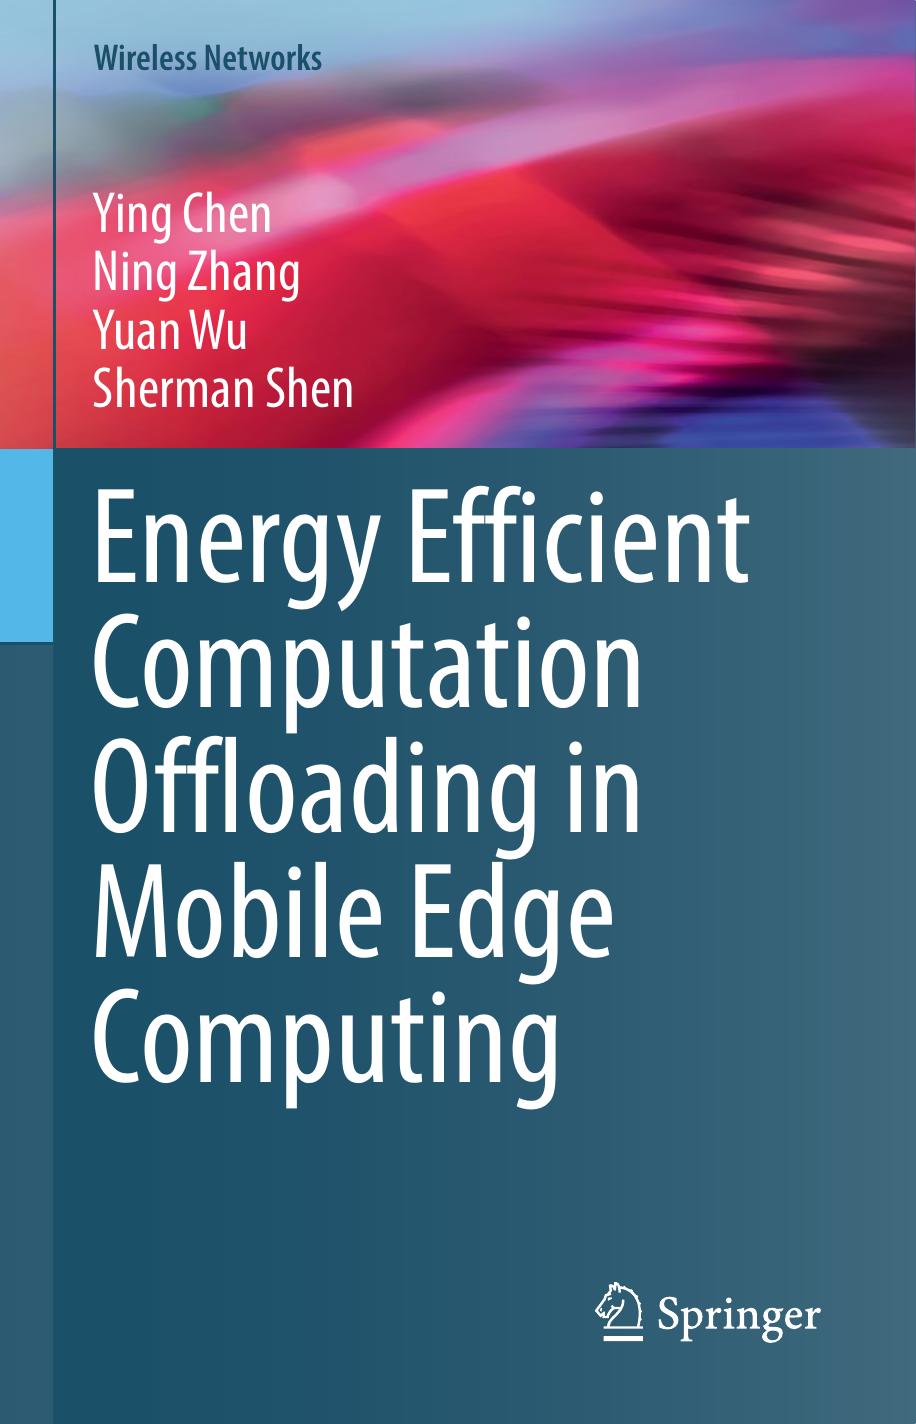 (Wireless Networks) Ying Chen, Ning Zhang, Yuan Wu, Sherman Shen